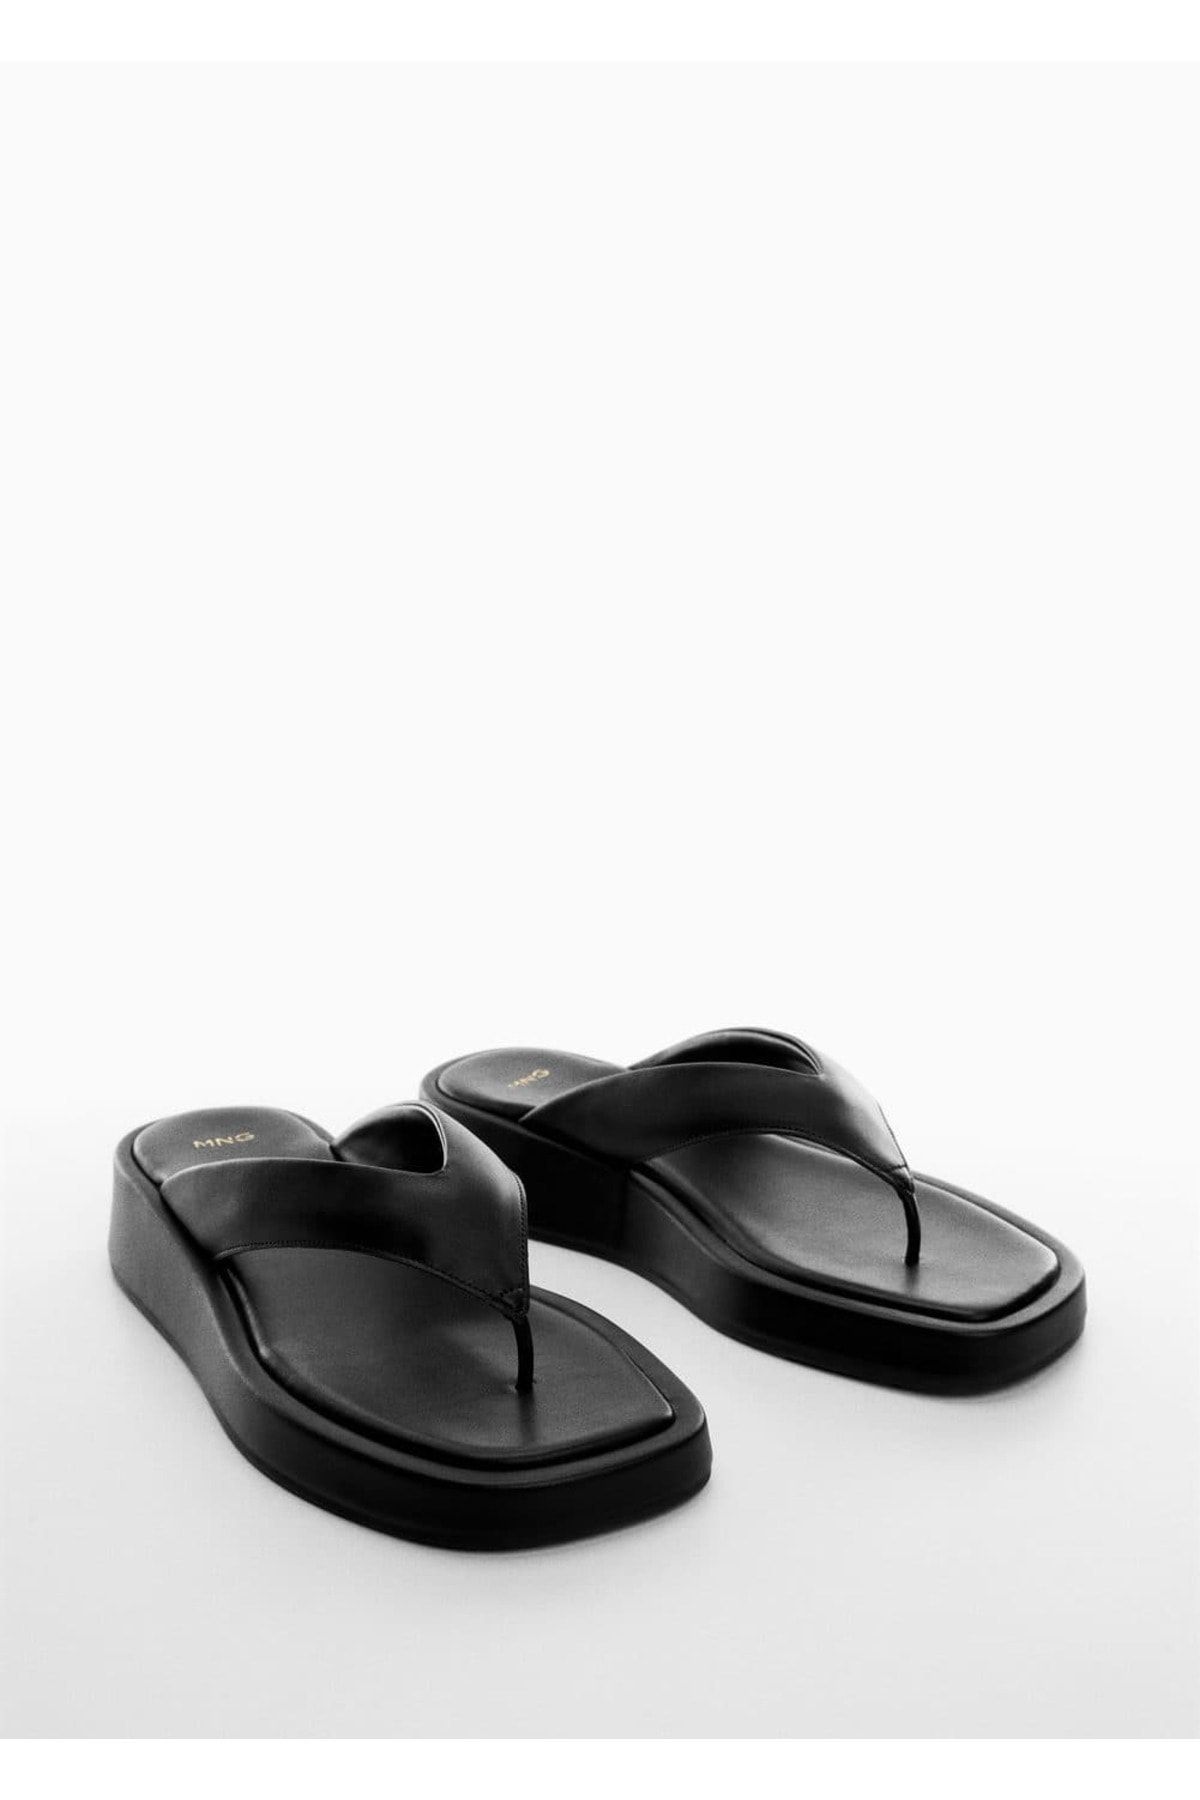 MANGO Platformlu Bantlı Sandalet